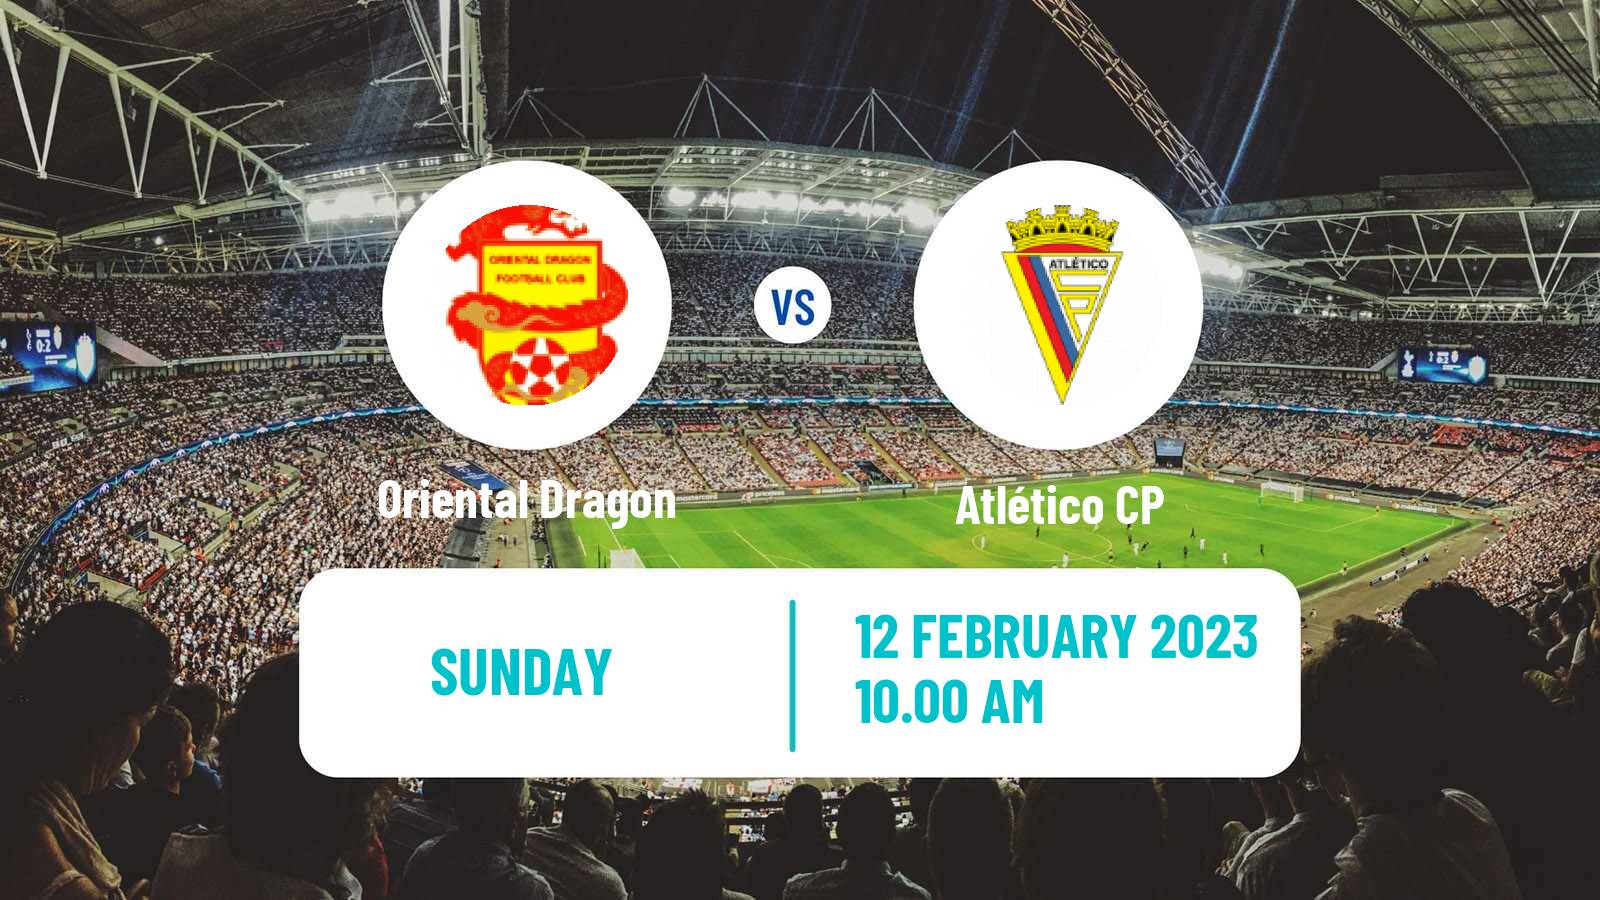 Soccer Campeonato de Portugal Oriental Dragon - Atlético CP